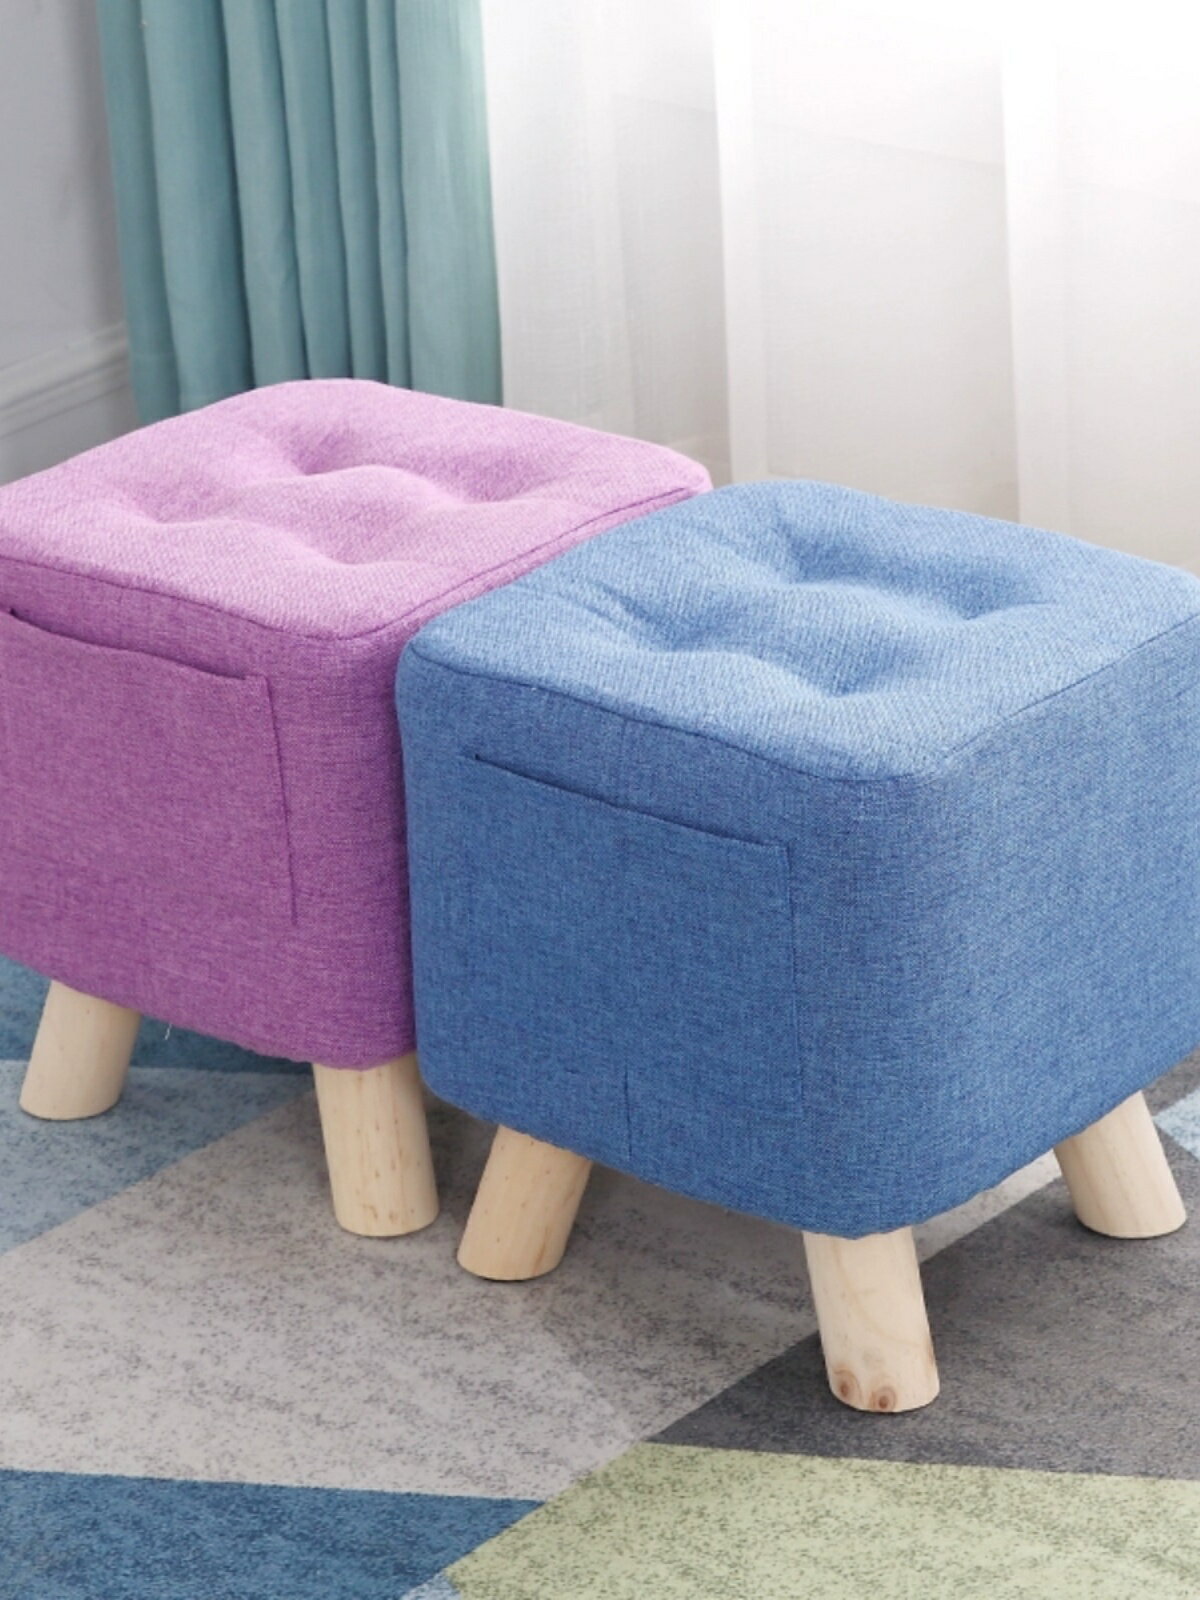 【滿299出貨】布藝小凳子創意時尚沙發凳客廳方凳茶幾凳矮凳椅子實木小板凳家用